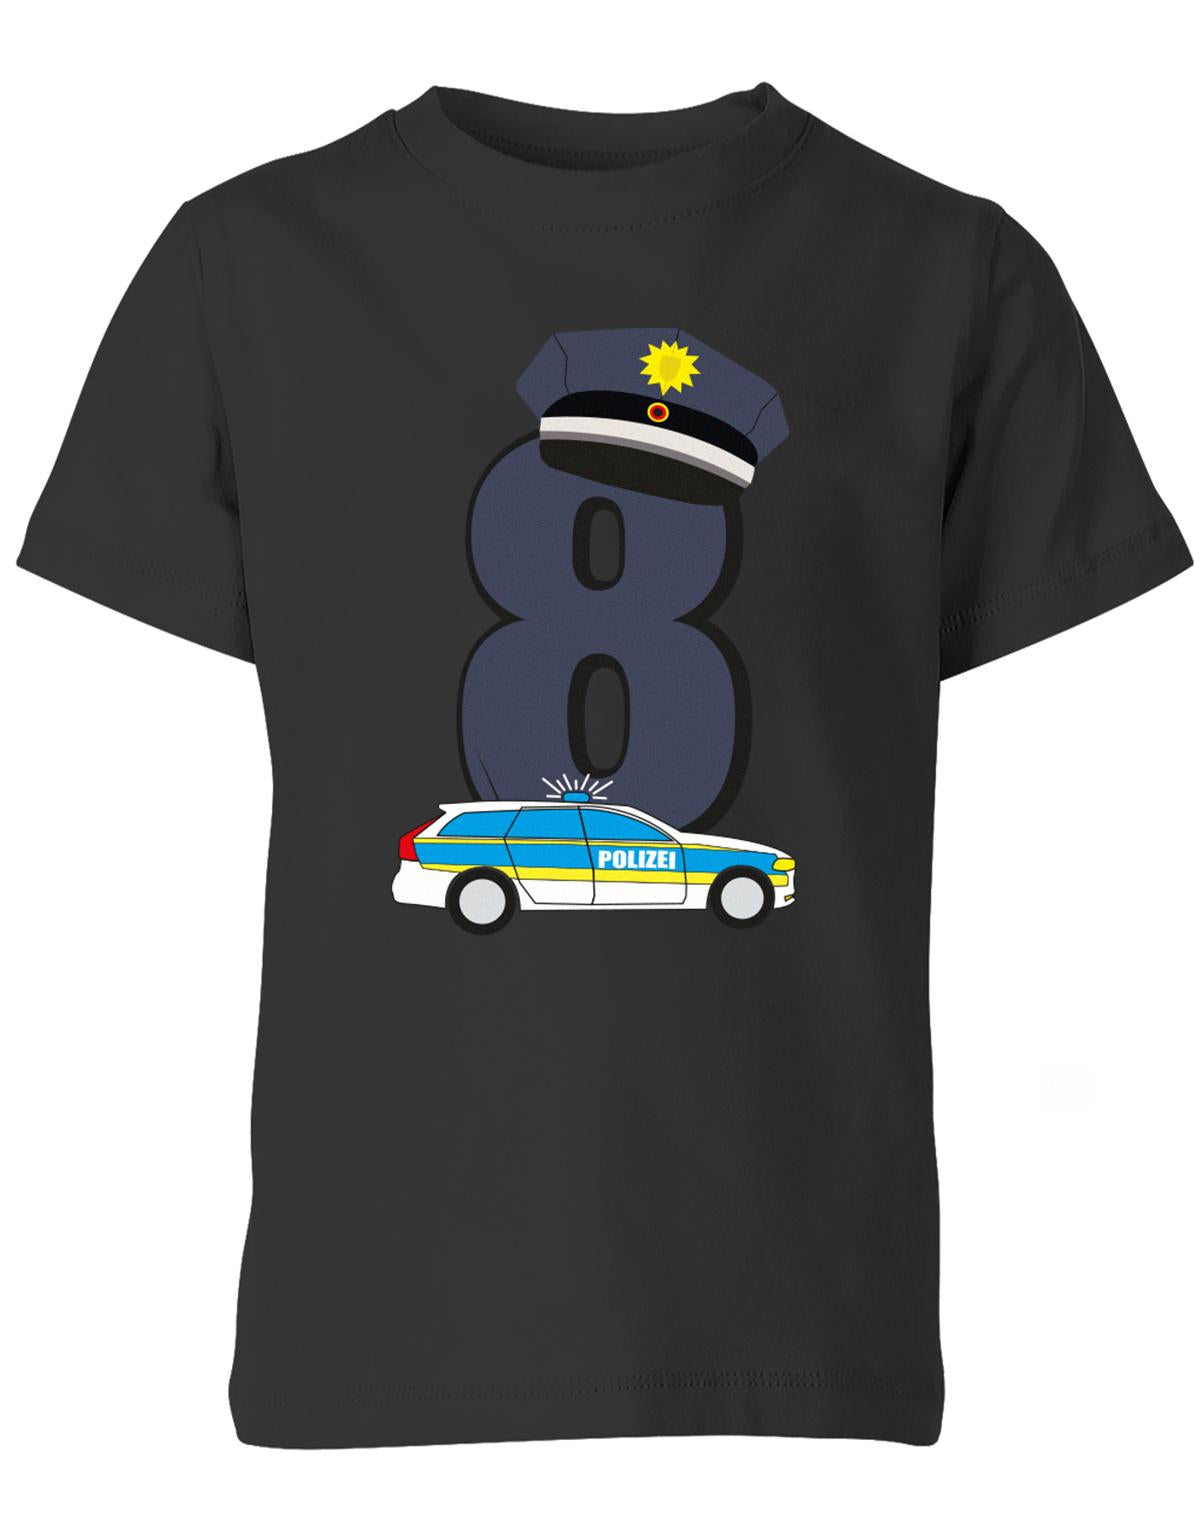 ich-bin-8-polizei-geburtstag-kinder-shirt-schwarz